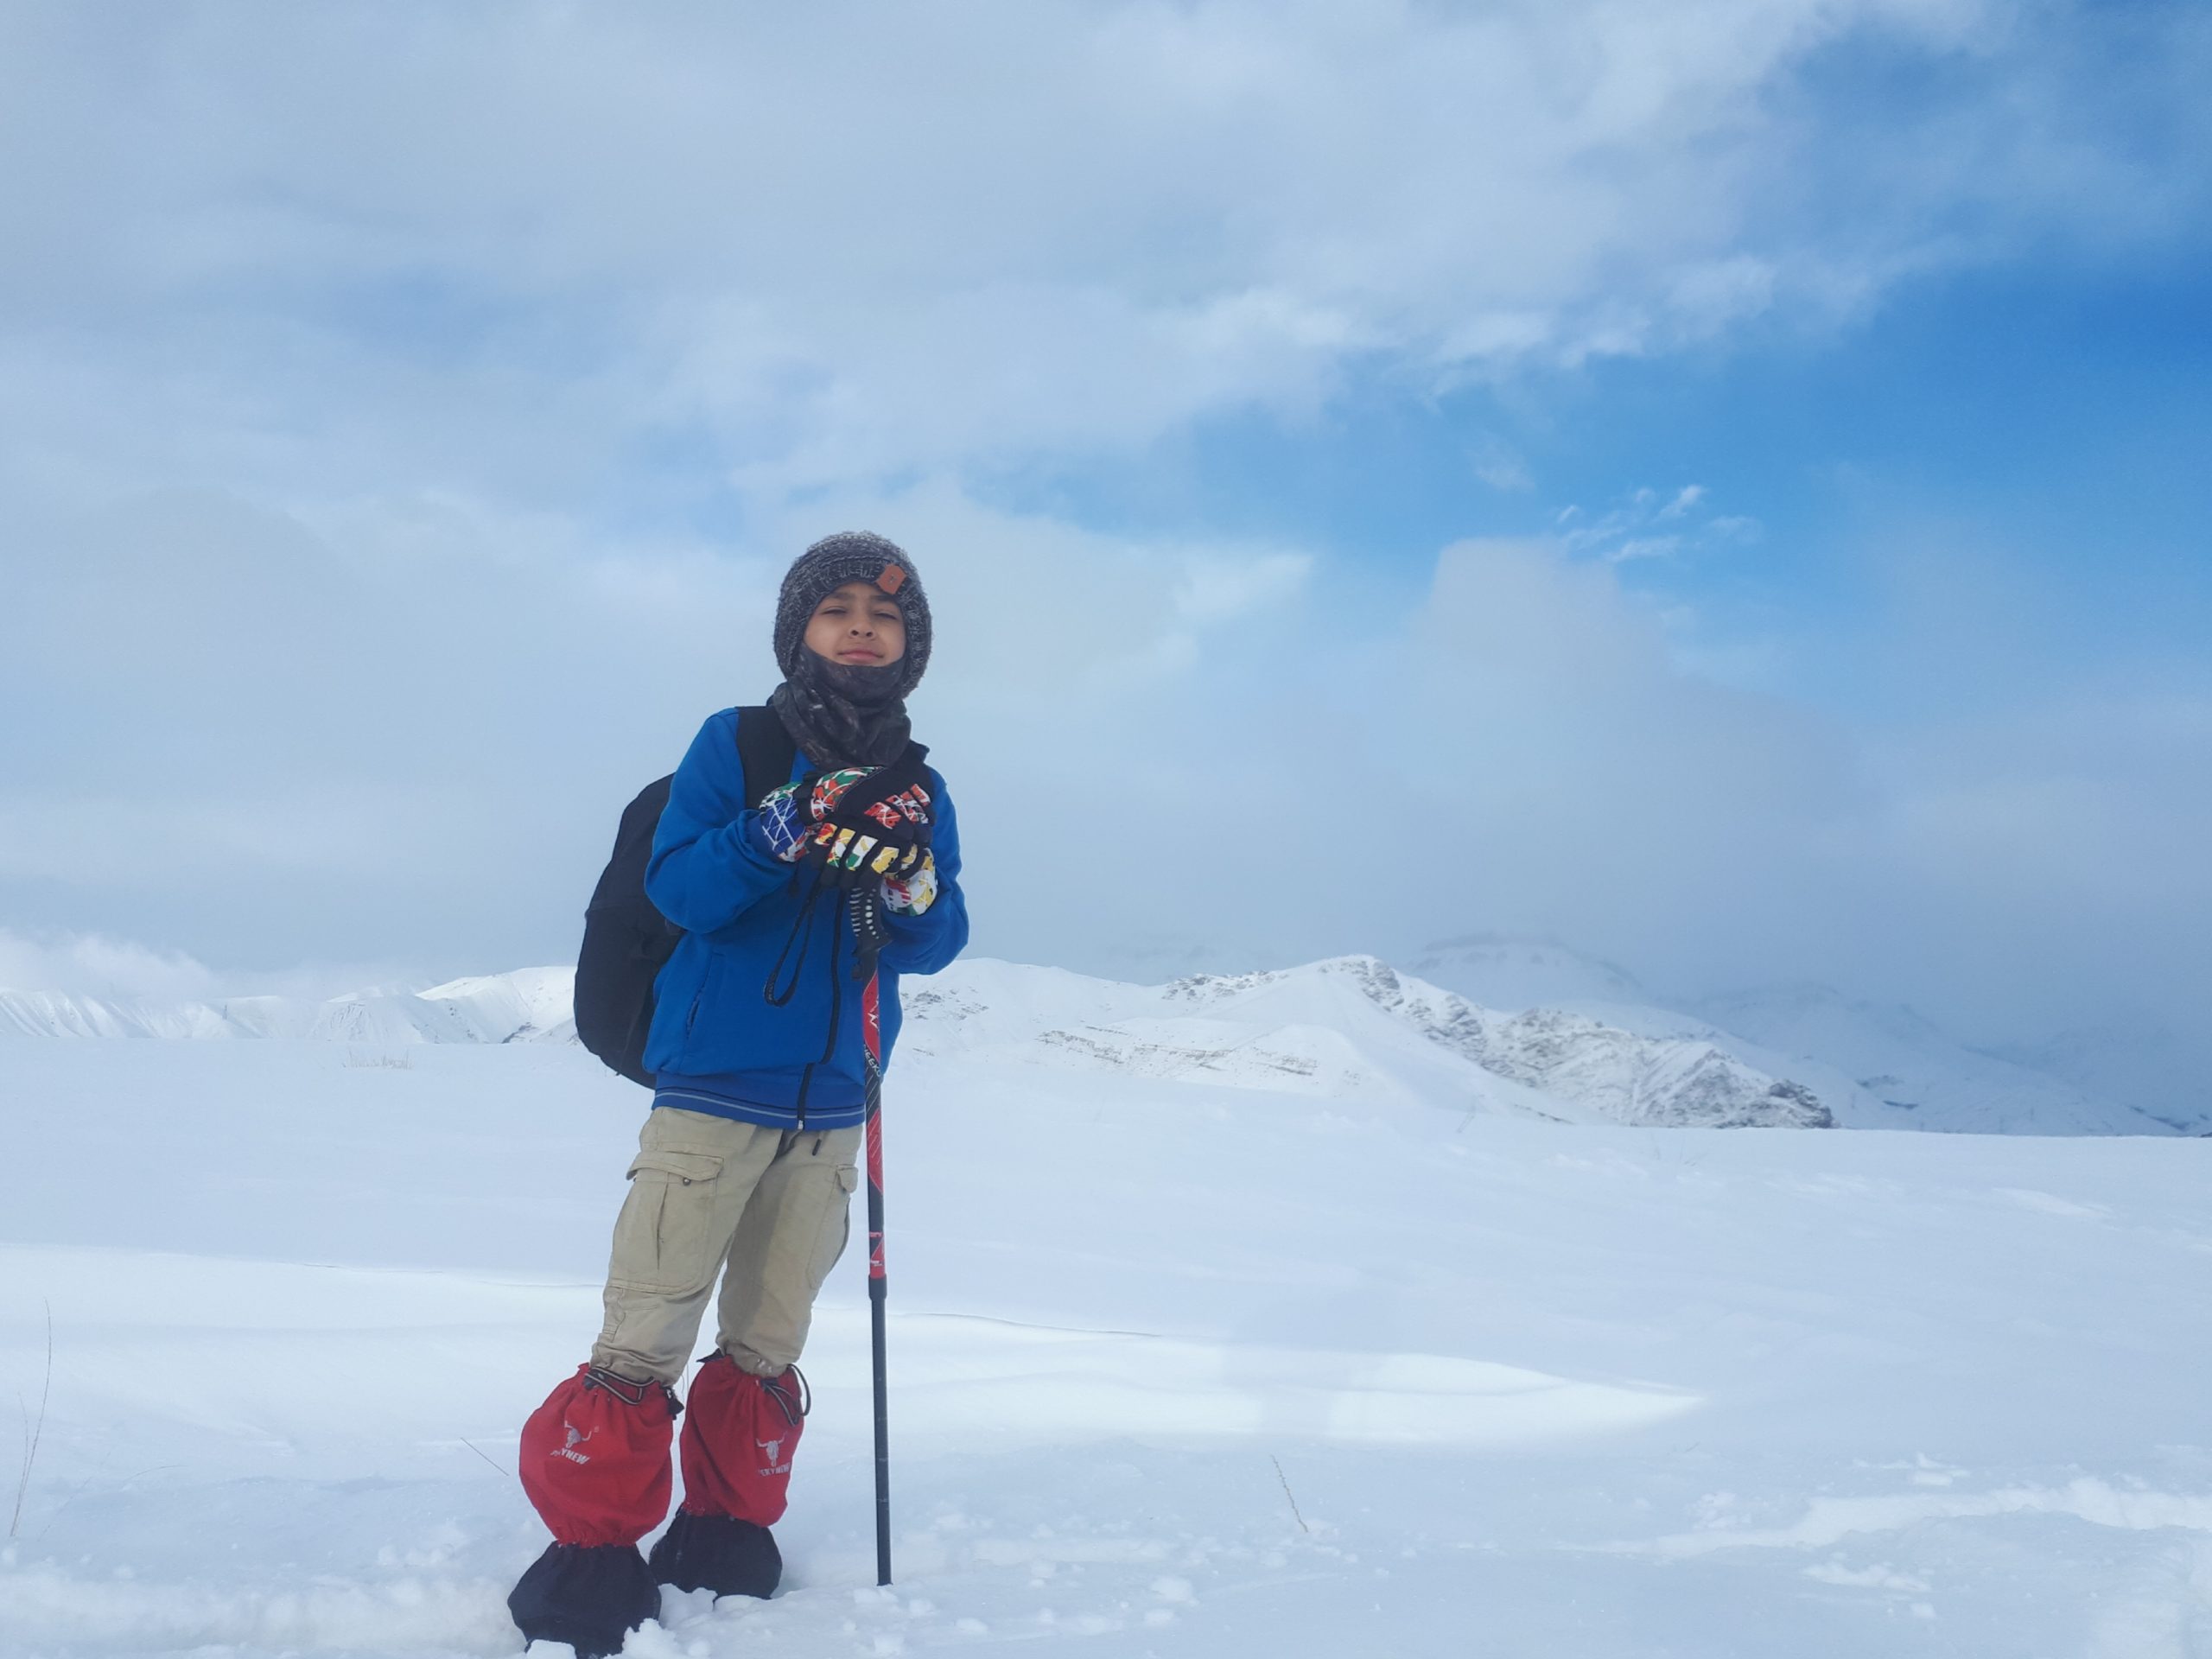 پنجم دی ۹۹ روزی بسیار تلخ در تاریخ کوهنوردی ایران